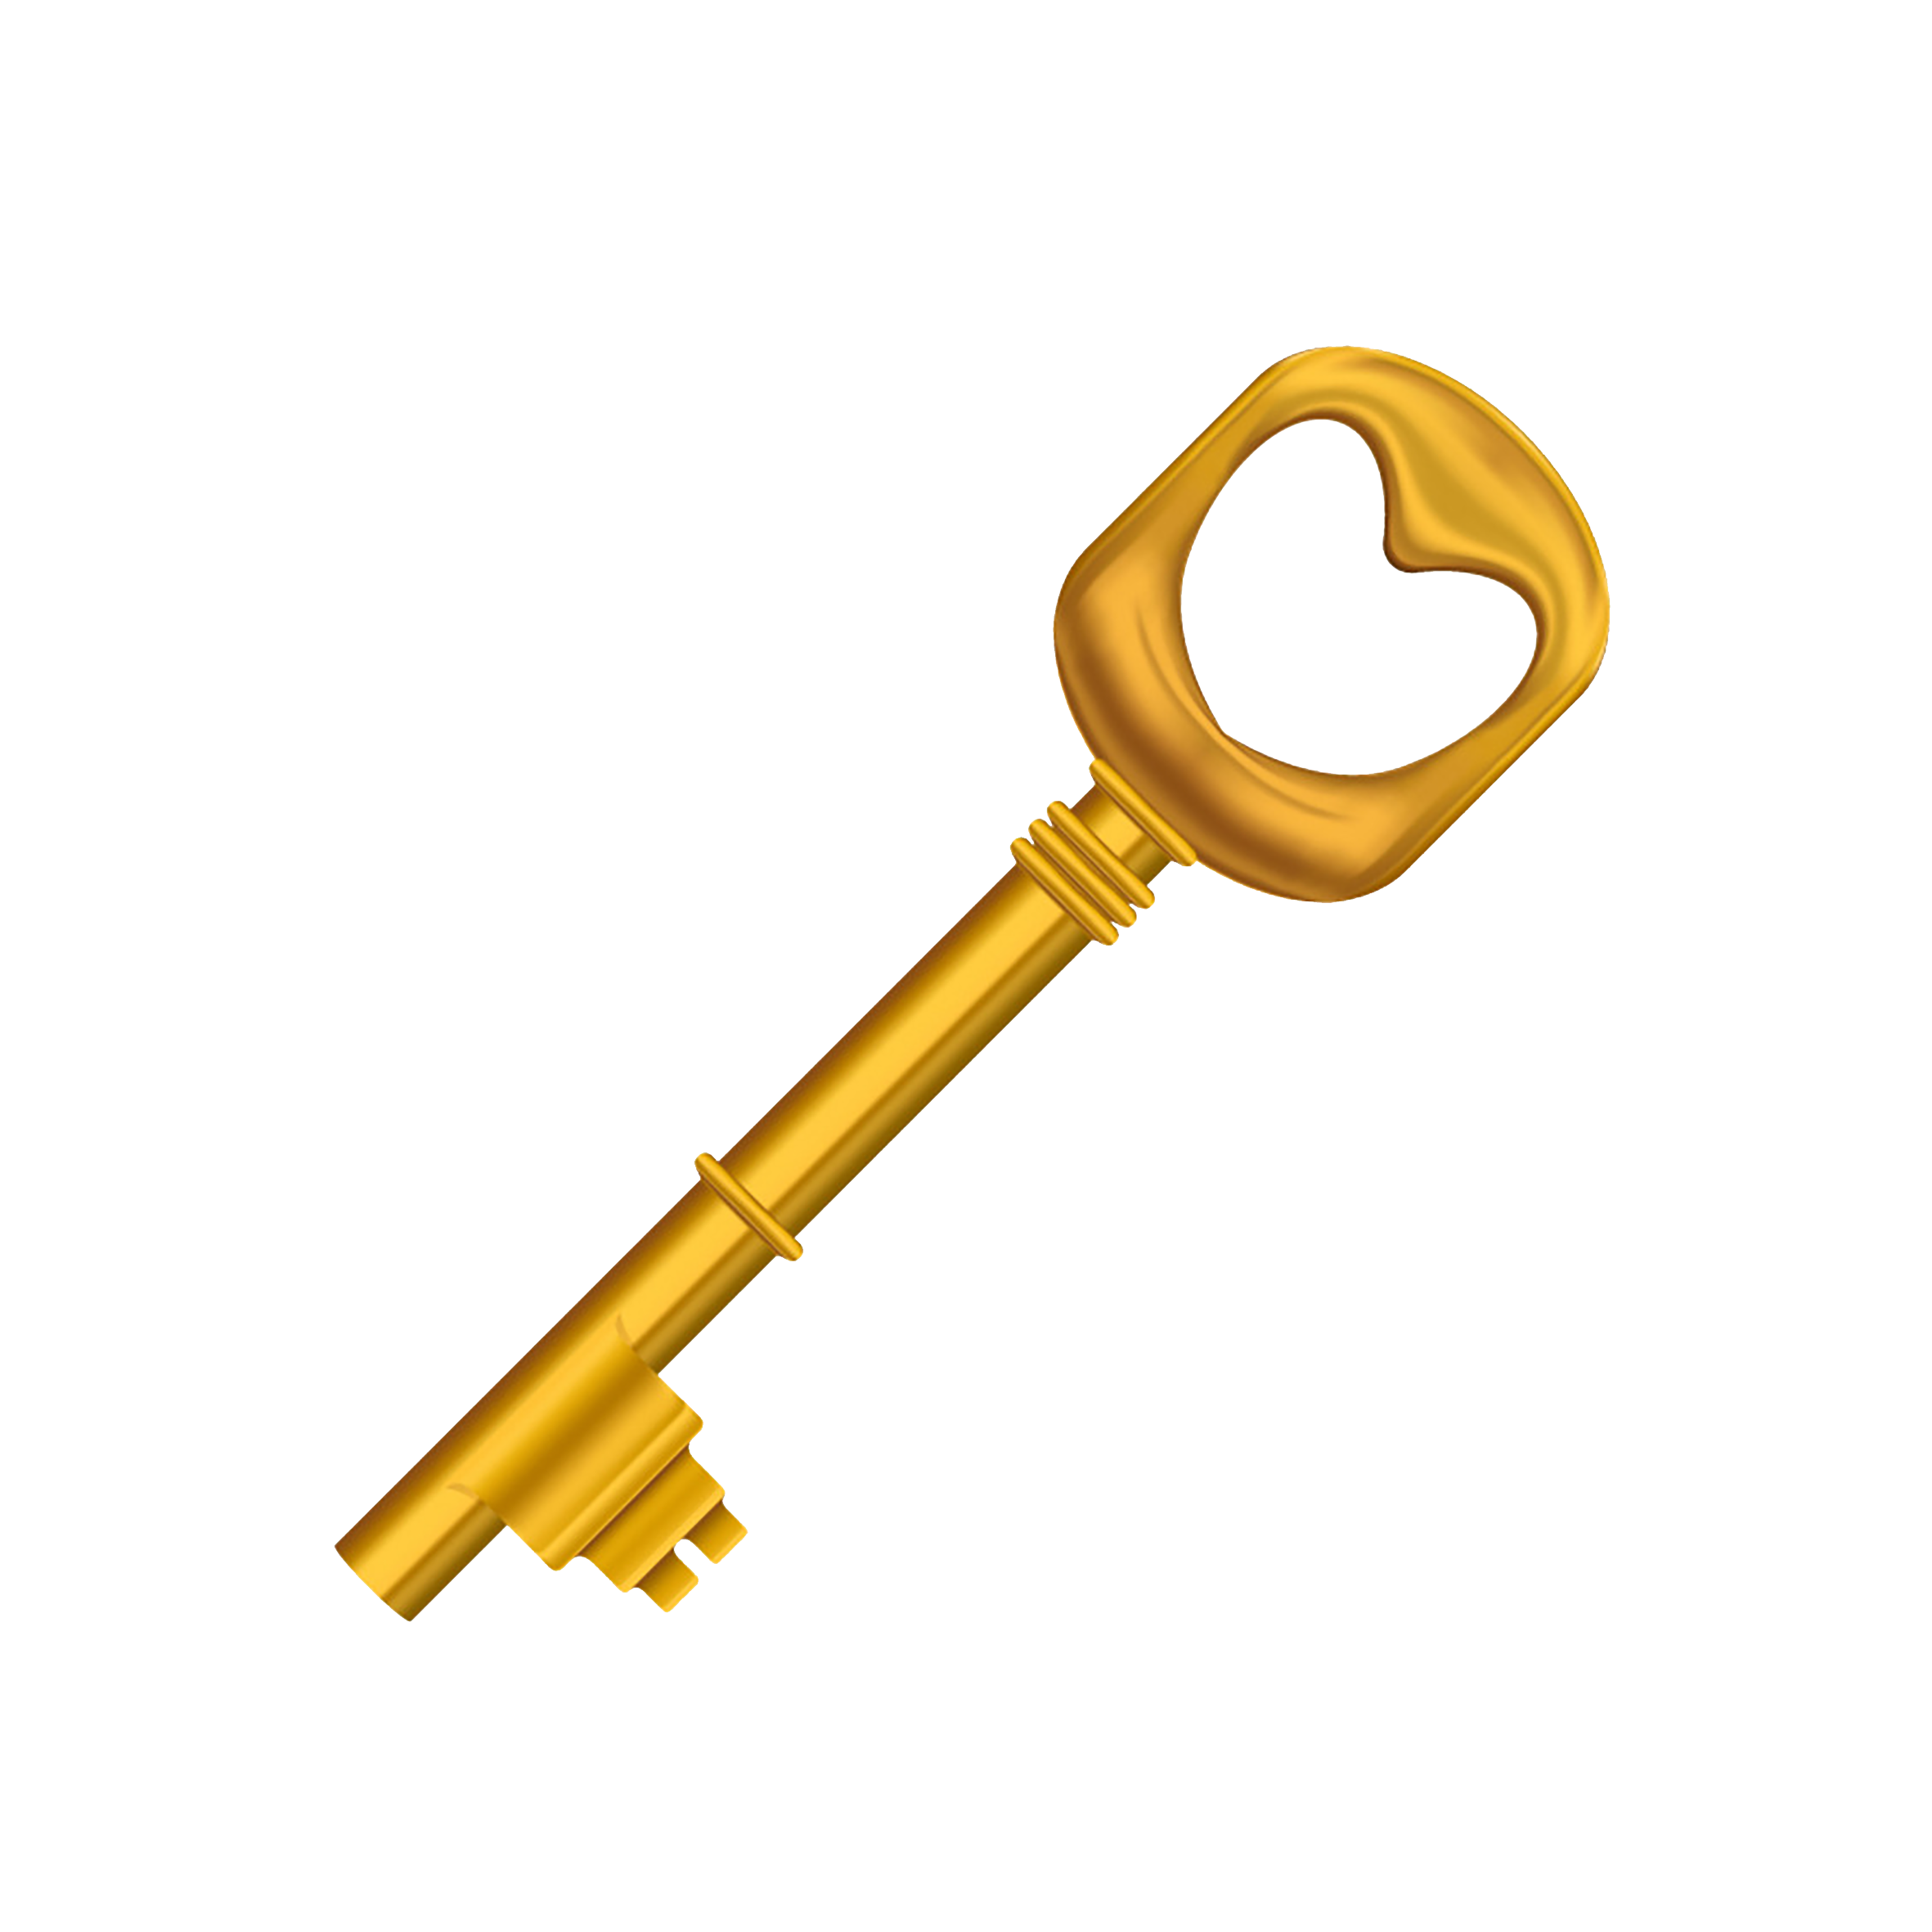 Ключ картинка. Золотой ключик. Изображение ключа. Ключ на прозрачном фоне. Ключ рисунок без фона.